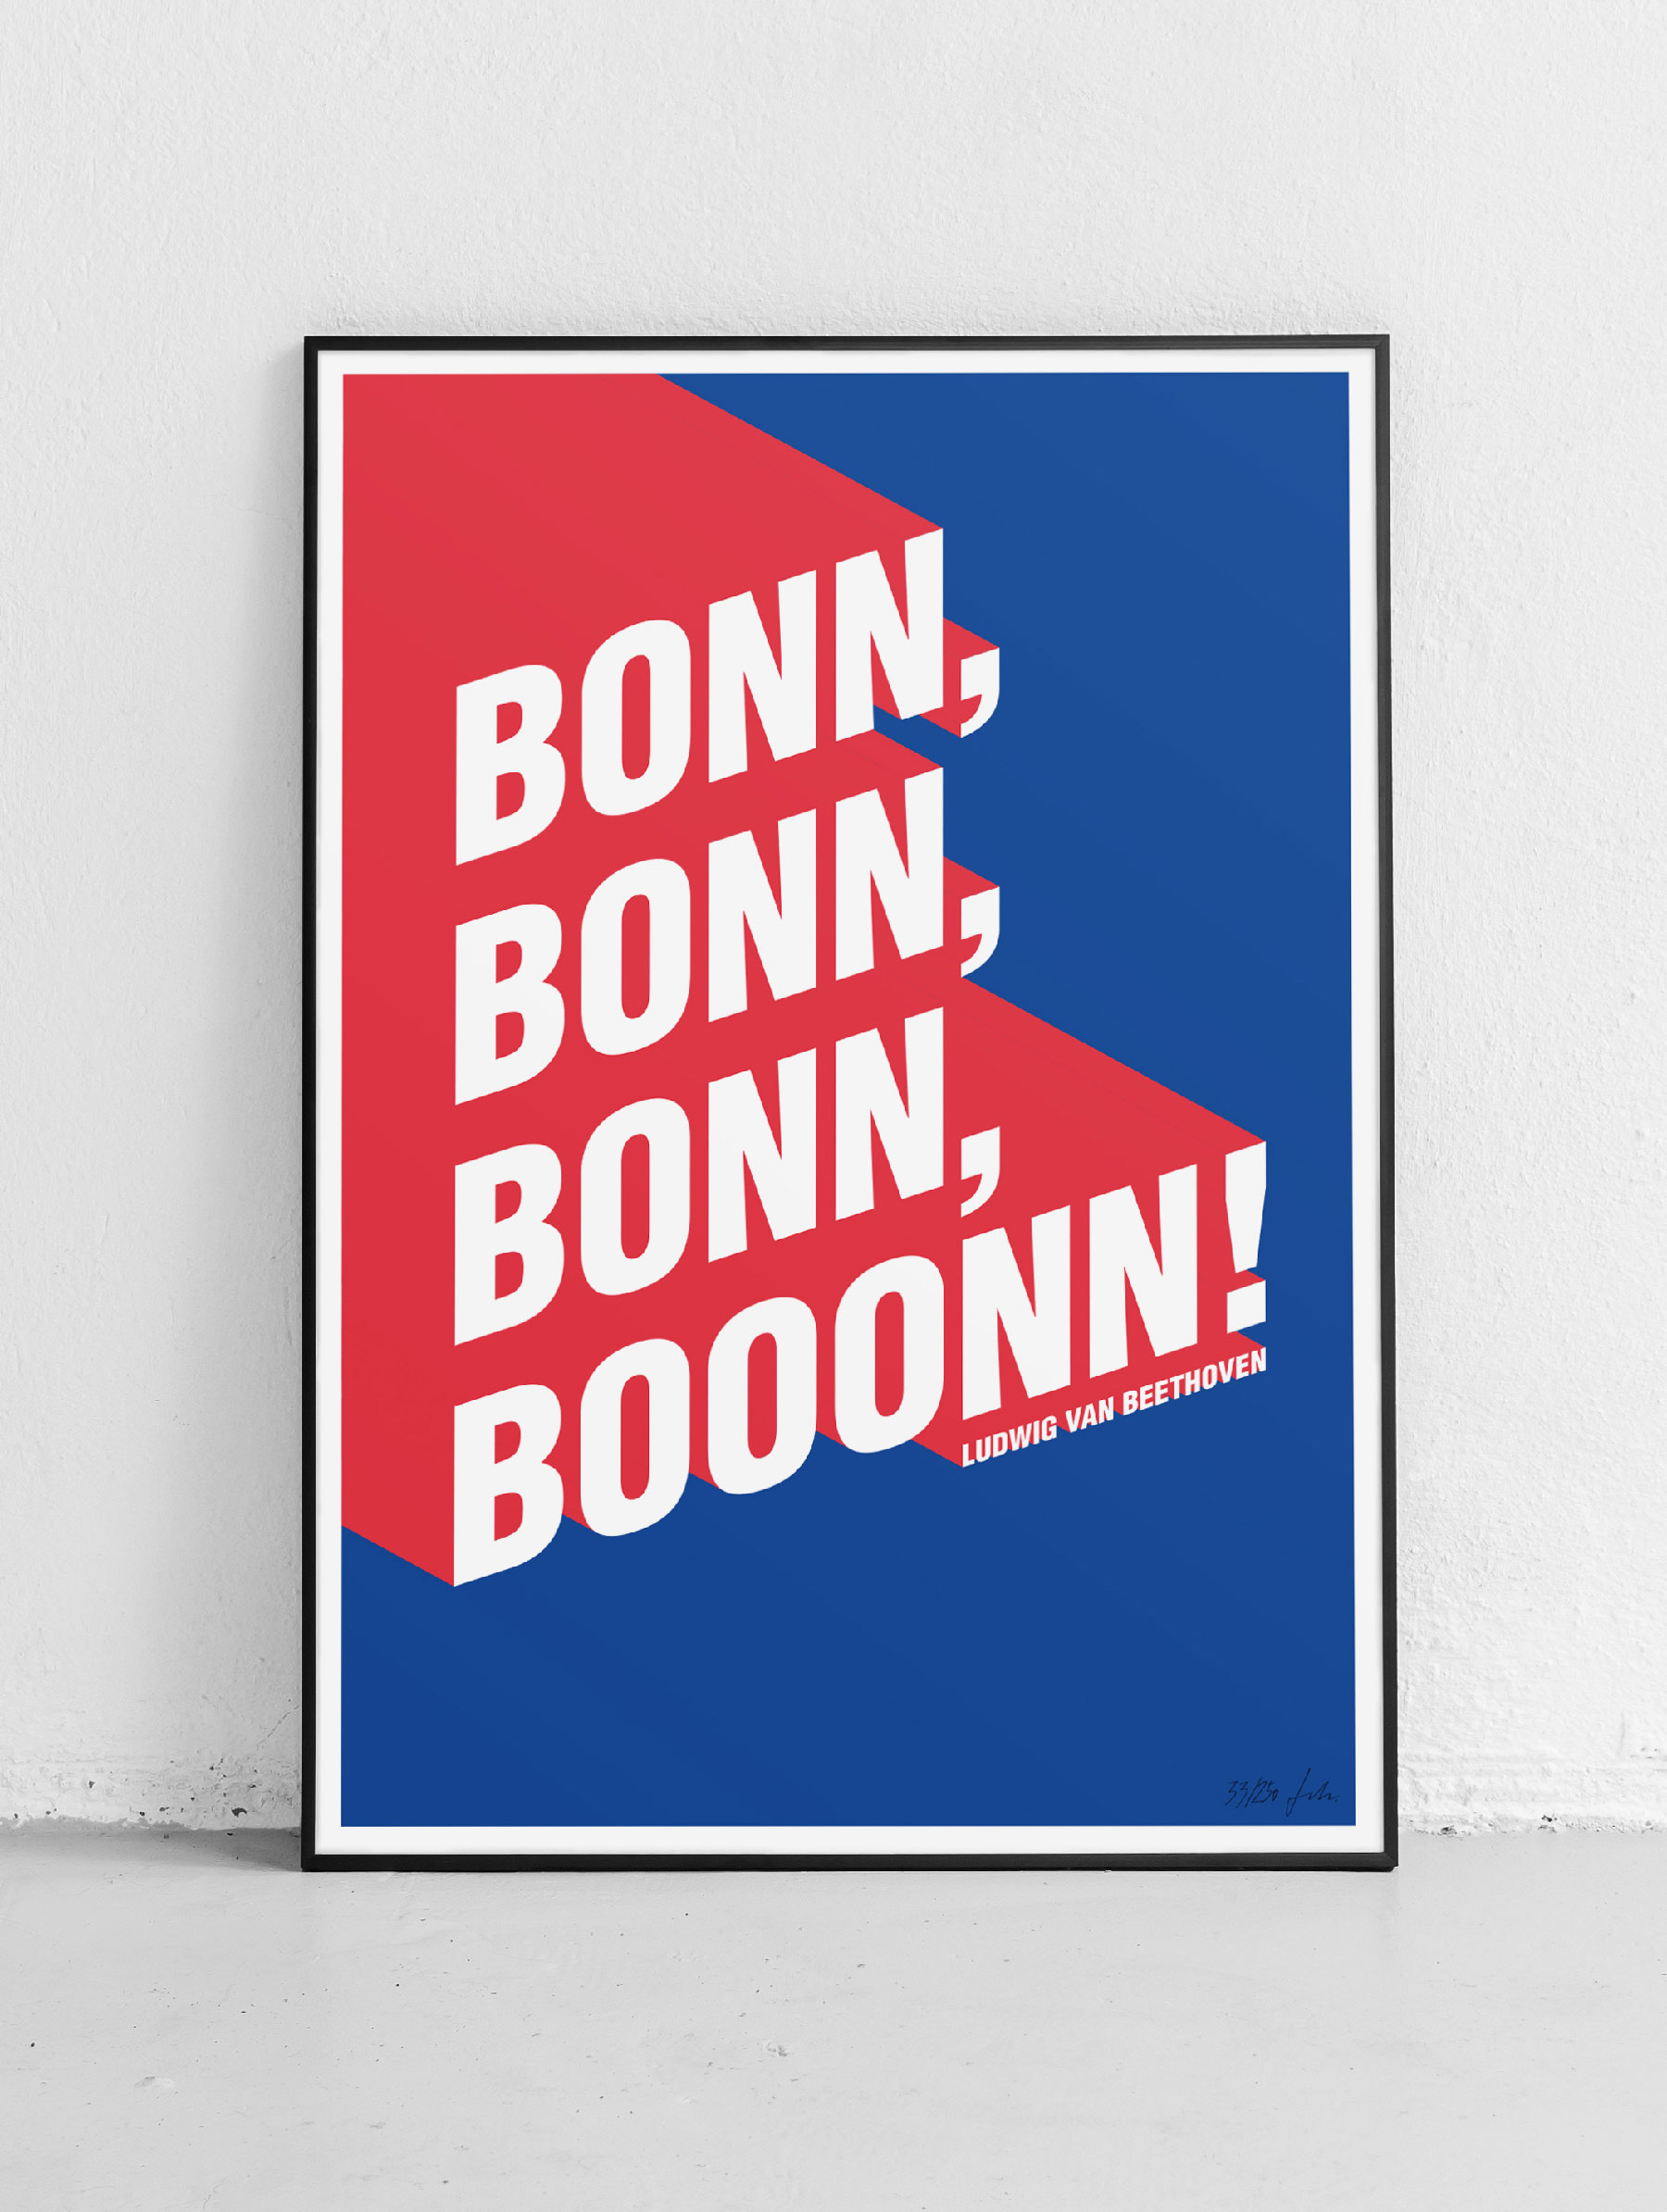 Bonn, Bonn, Bonn, Booonn - ARTPRINT by Dirk Schächter